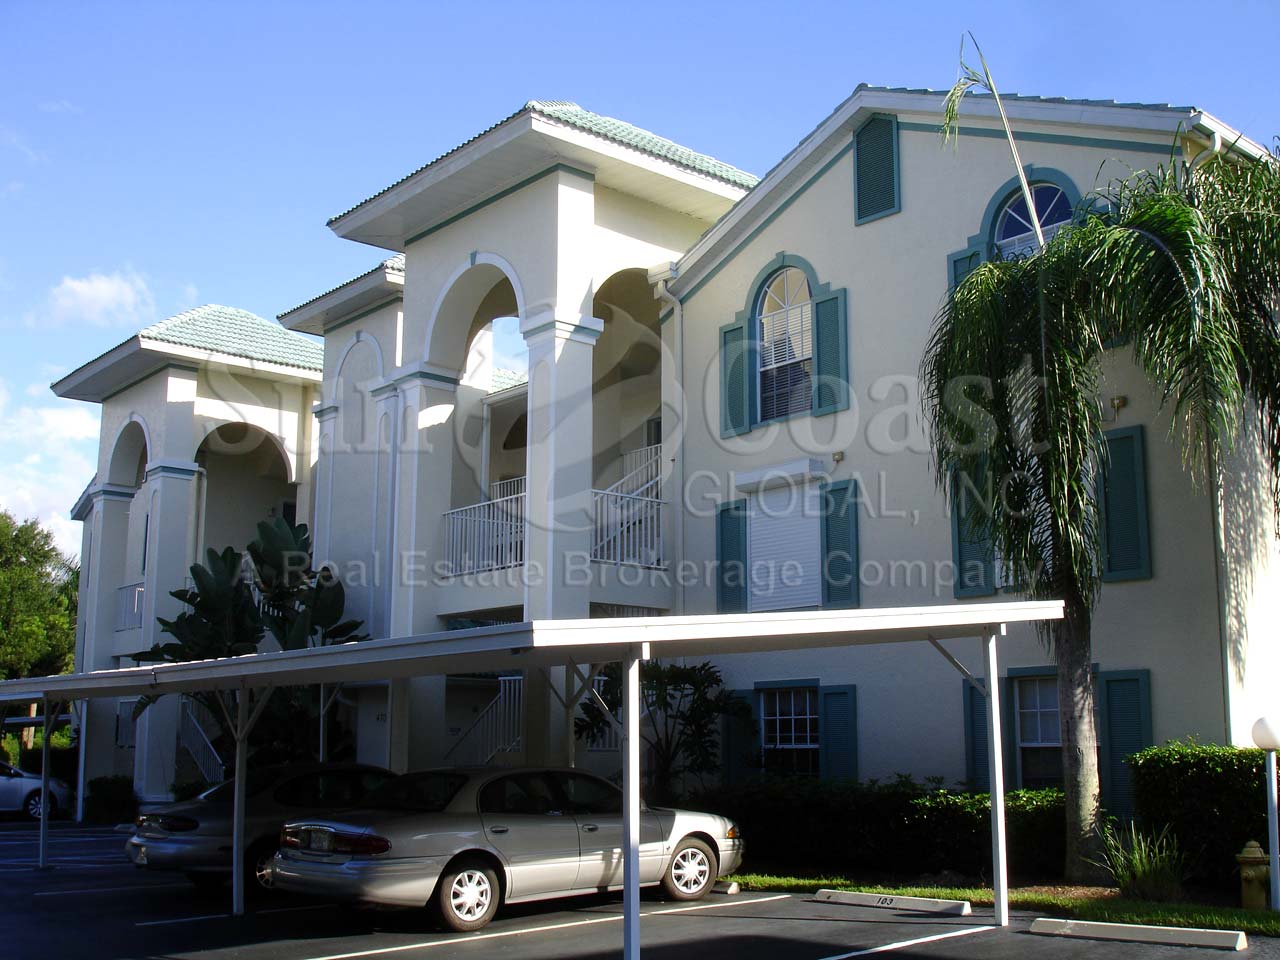 Bermuda Cove Condominiums